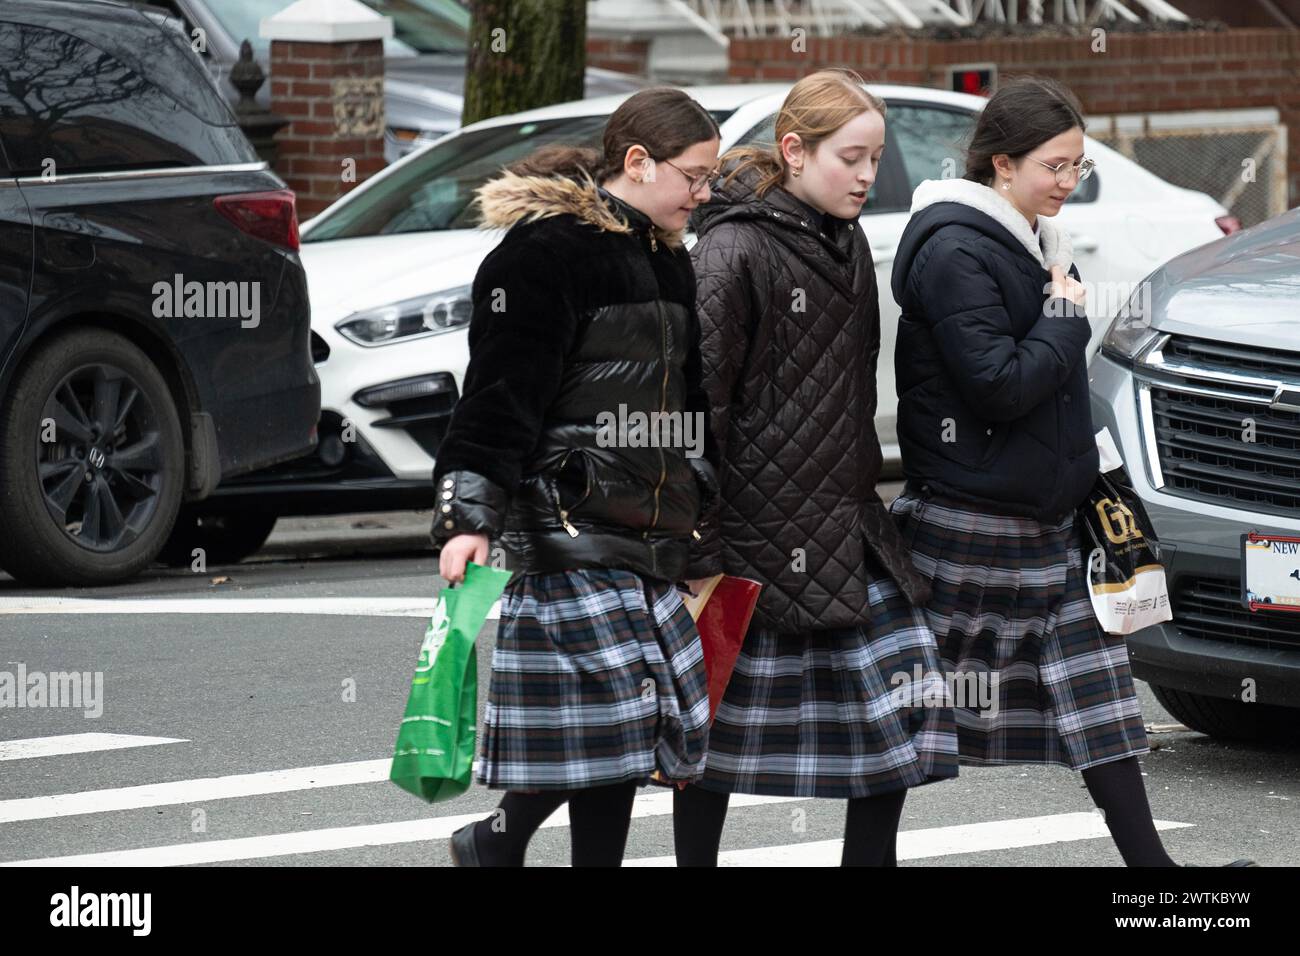 Orthodox Jewish classmates wearing the same tartan skirts cross a street in Brooklyn, New York. Stock Photo